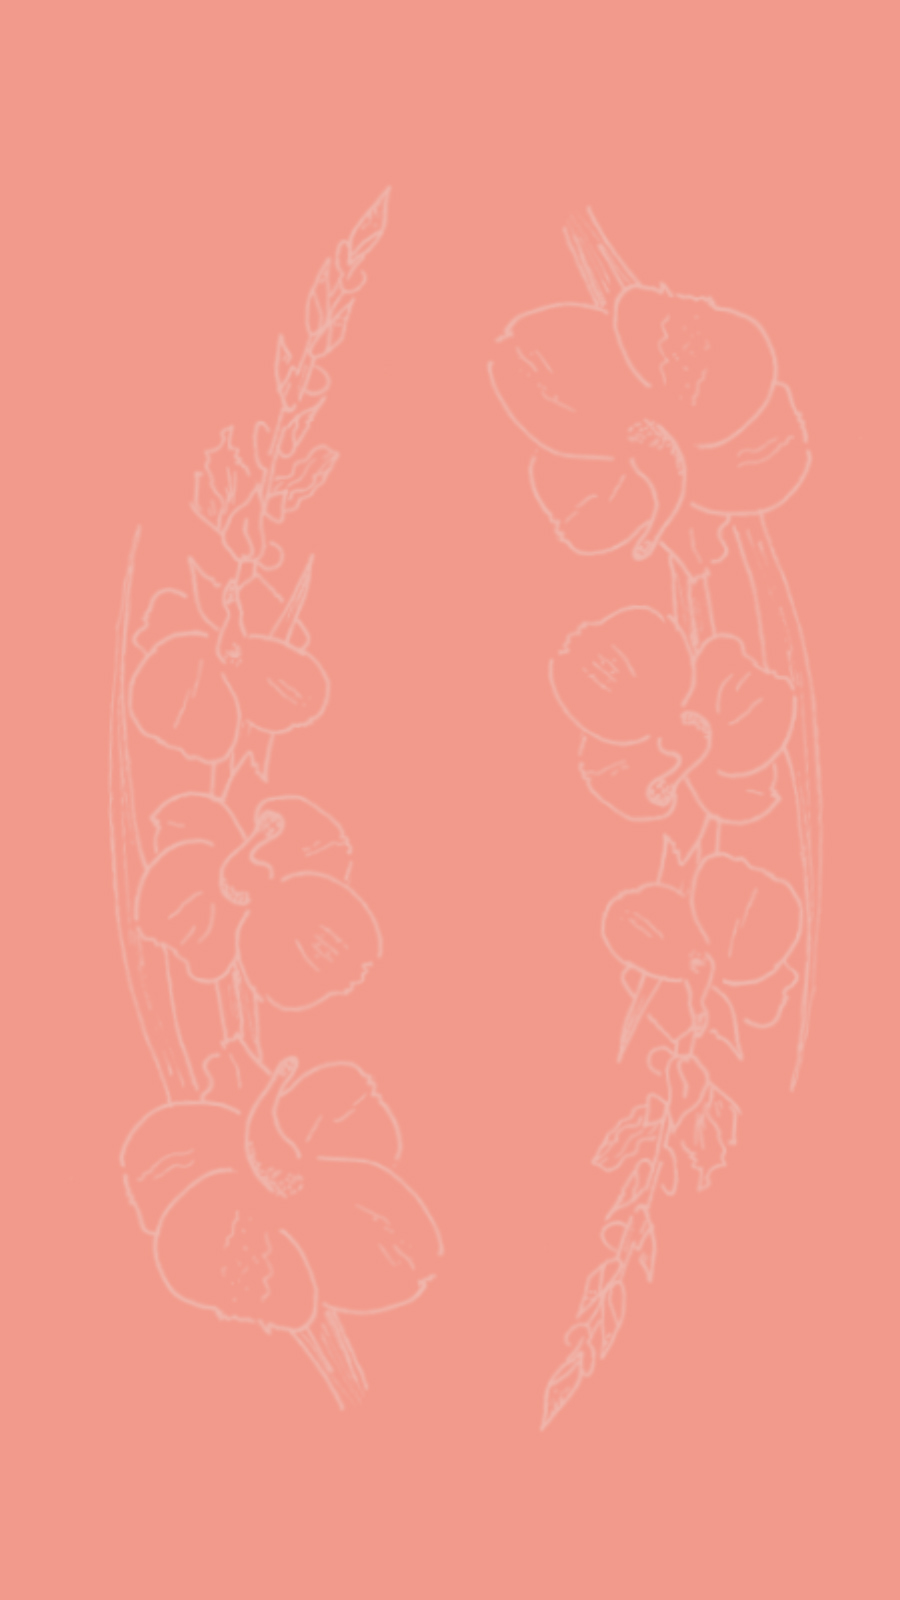 gladiolus flower sketch